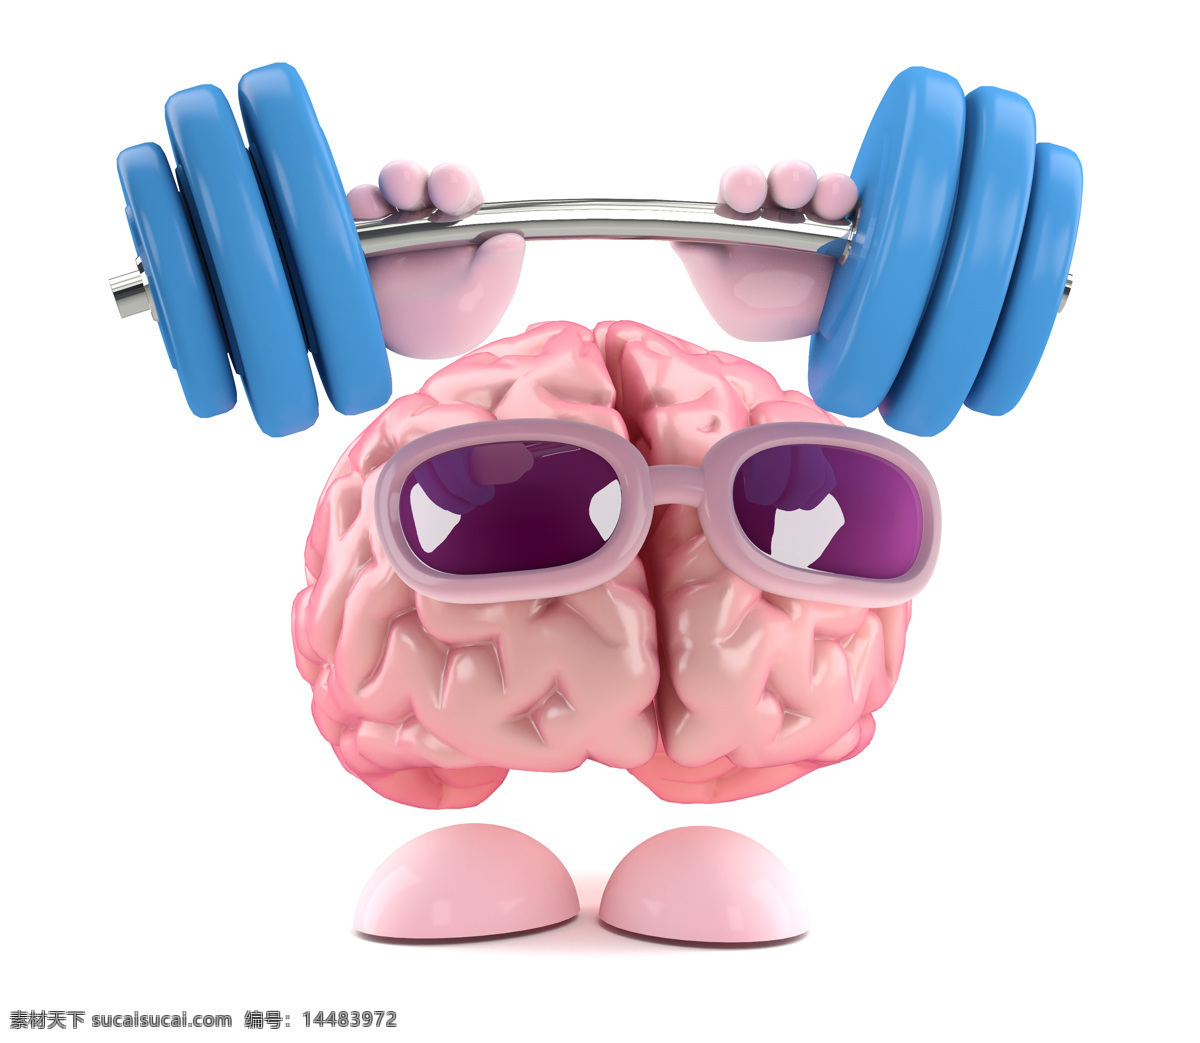 大脑 漫画 哑铃 人类大脑 大脑漫画 大脑设计 卡通大脑 大脑人物 虚拟人物 儿童卡通 卡通动画 脑细胞 脑容量 太阳镜 动漫动画